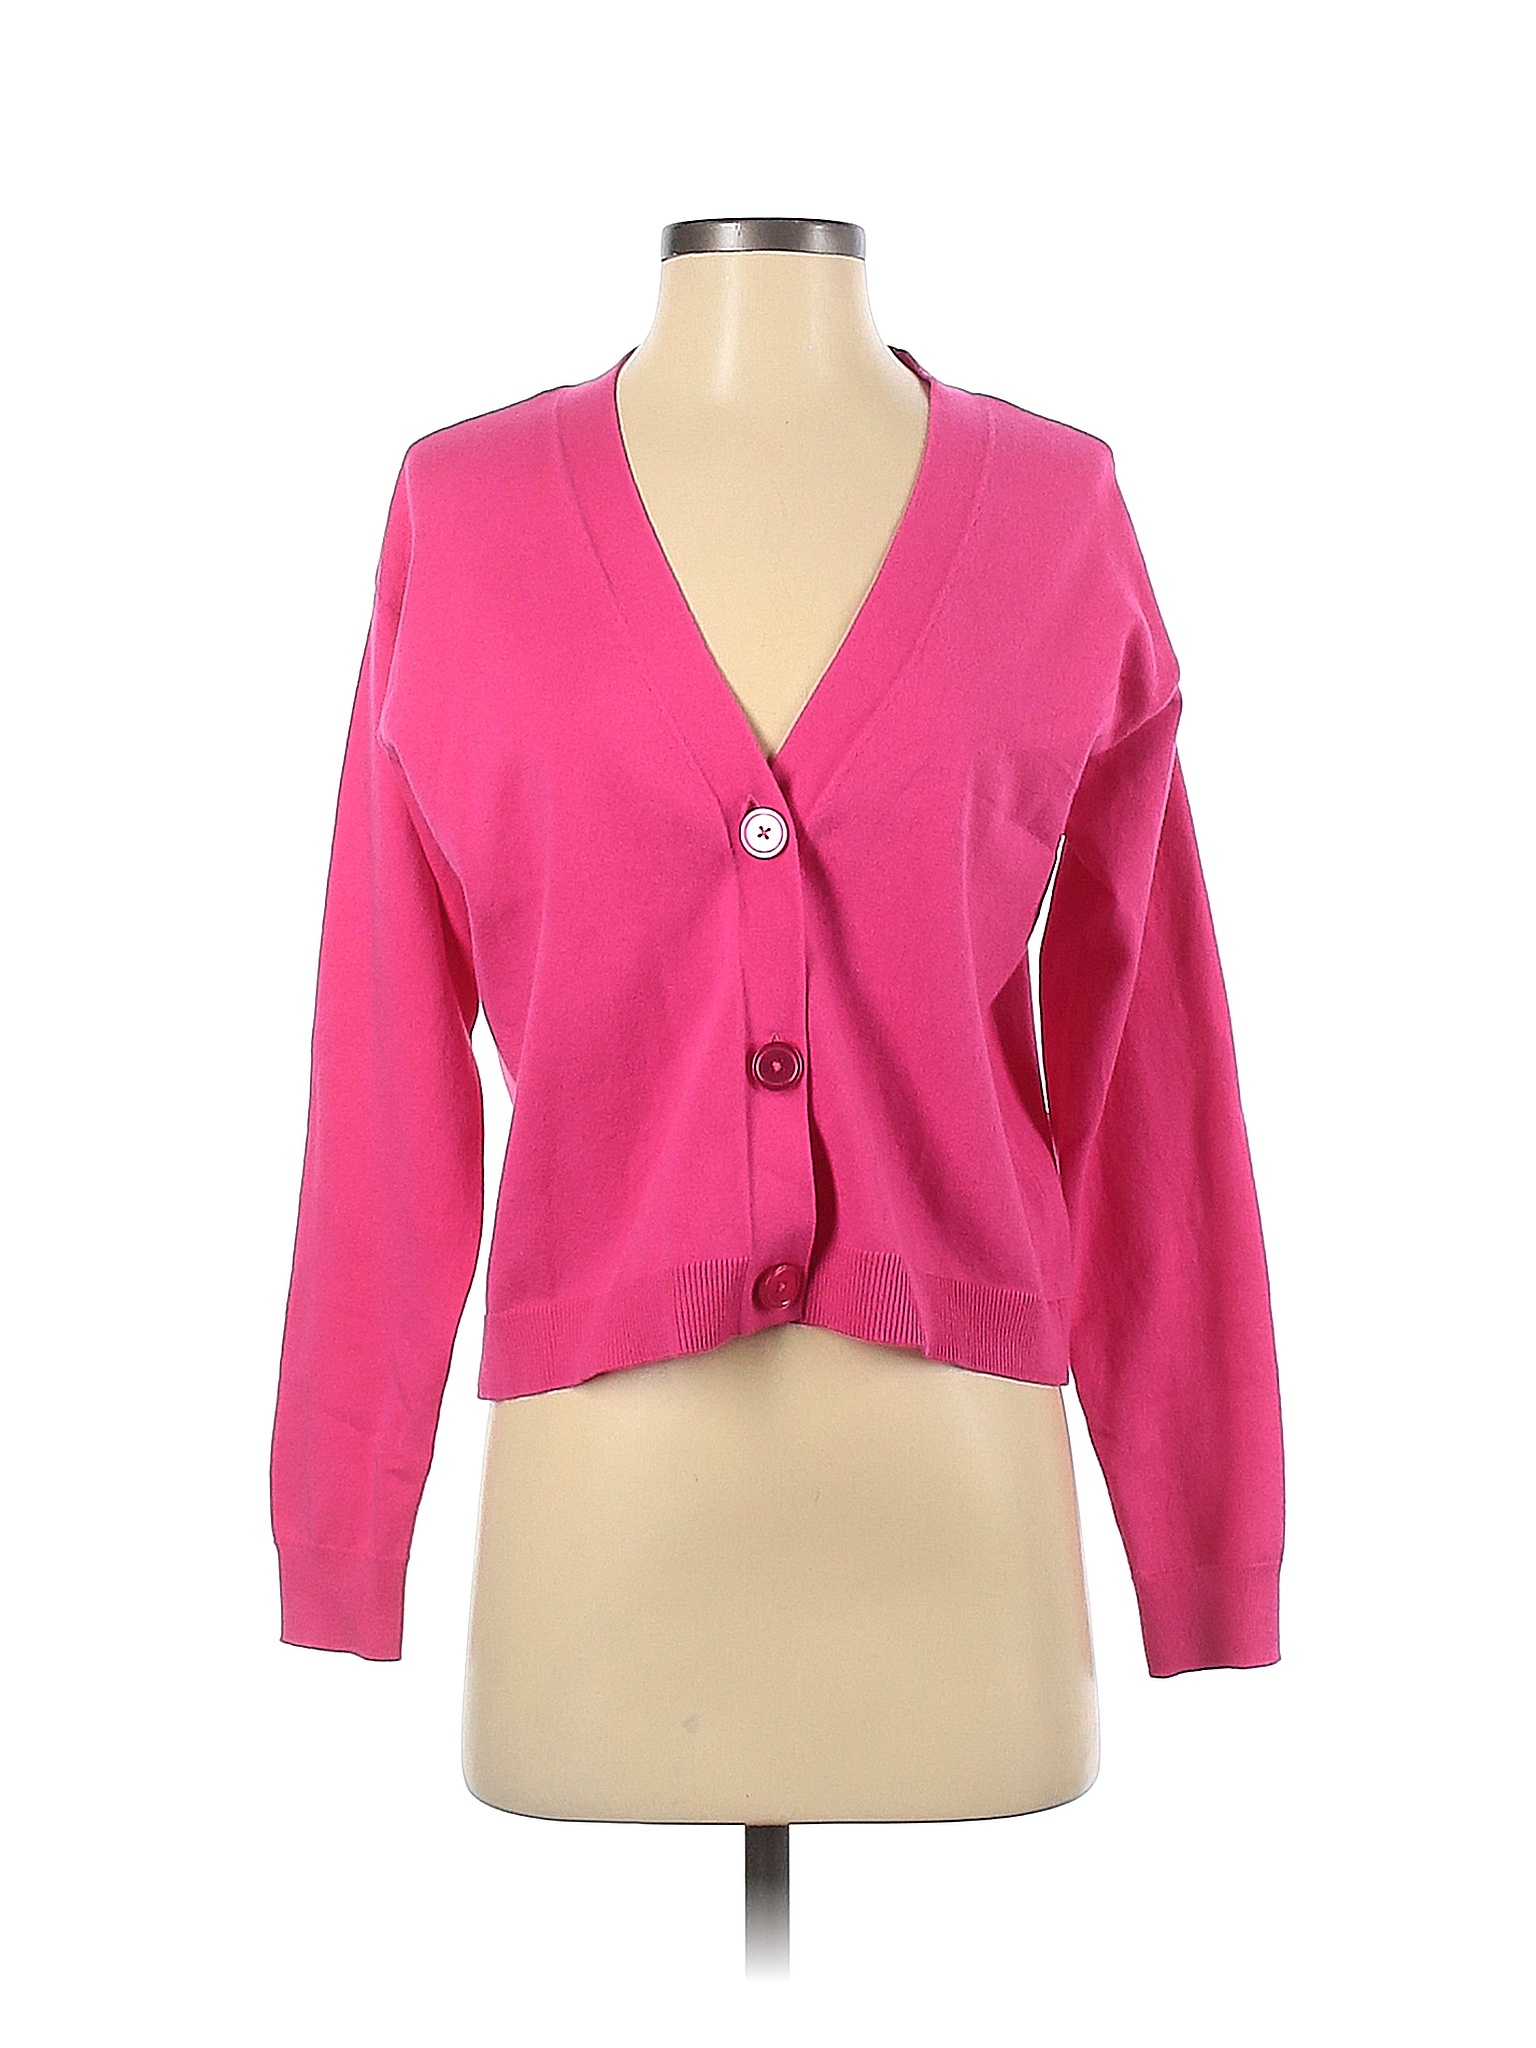 0円 新登場 Riley Rae ファッション Tシャツ Womens Pink V Neck Knit Tee T-Shirt Top L